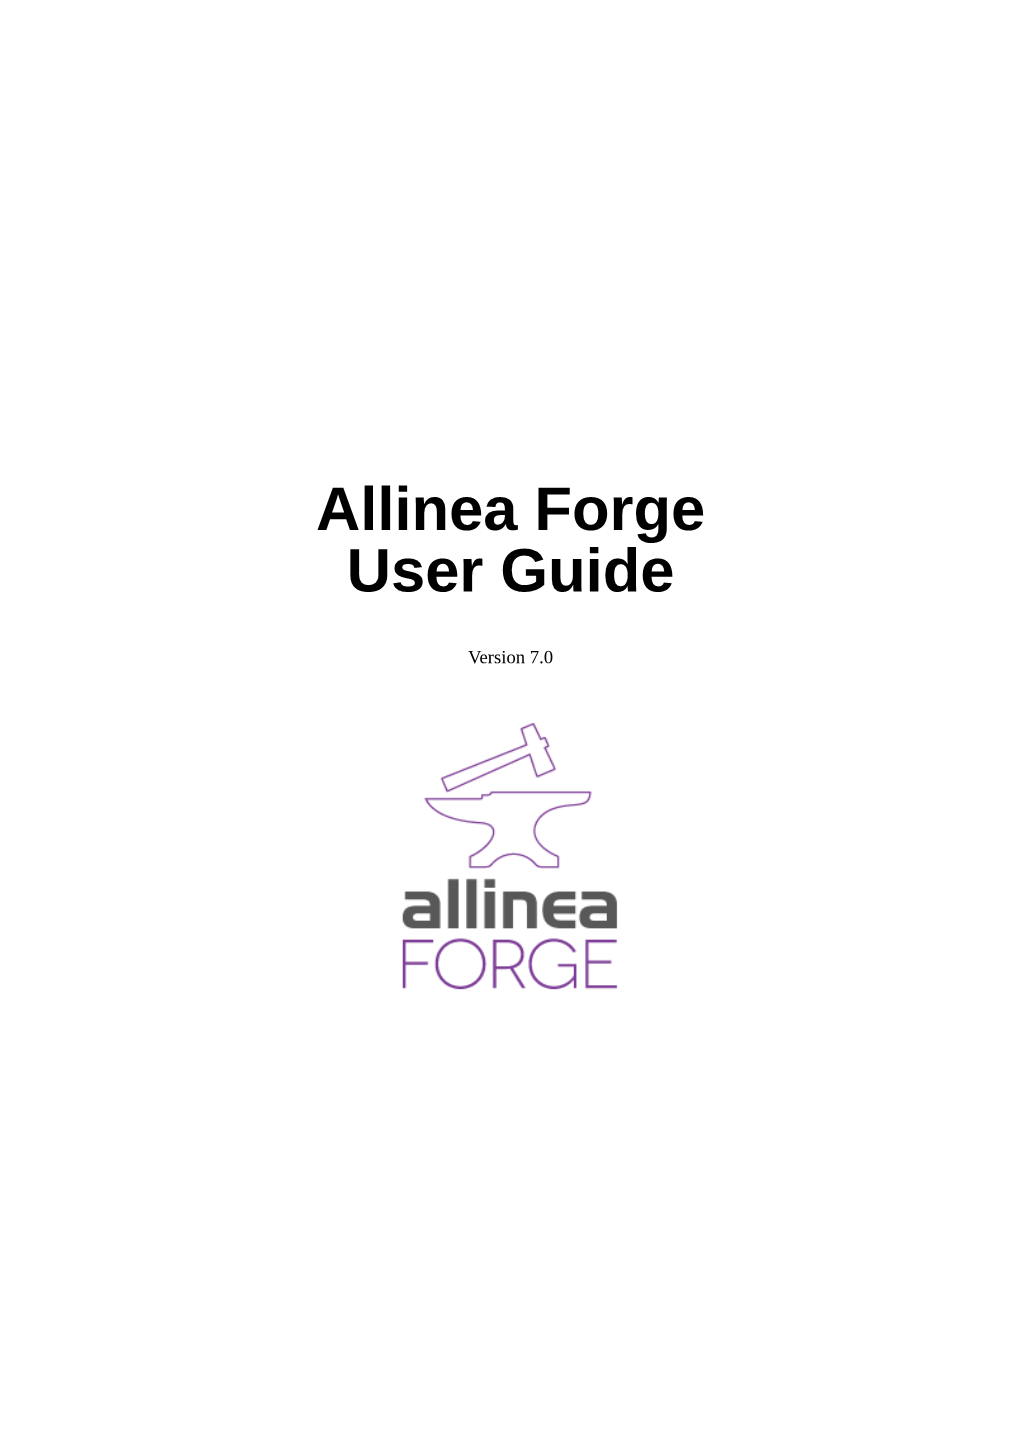 Allinea Forge User Guide